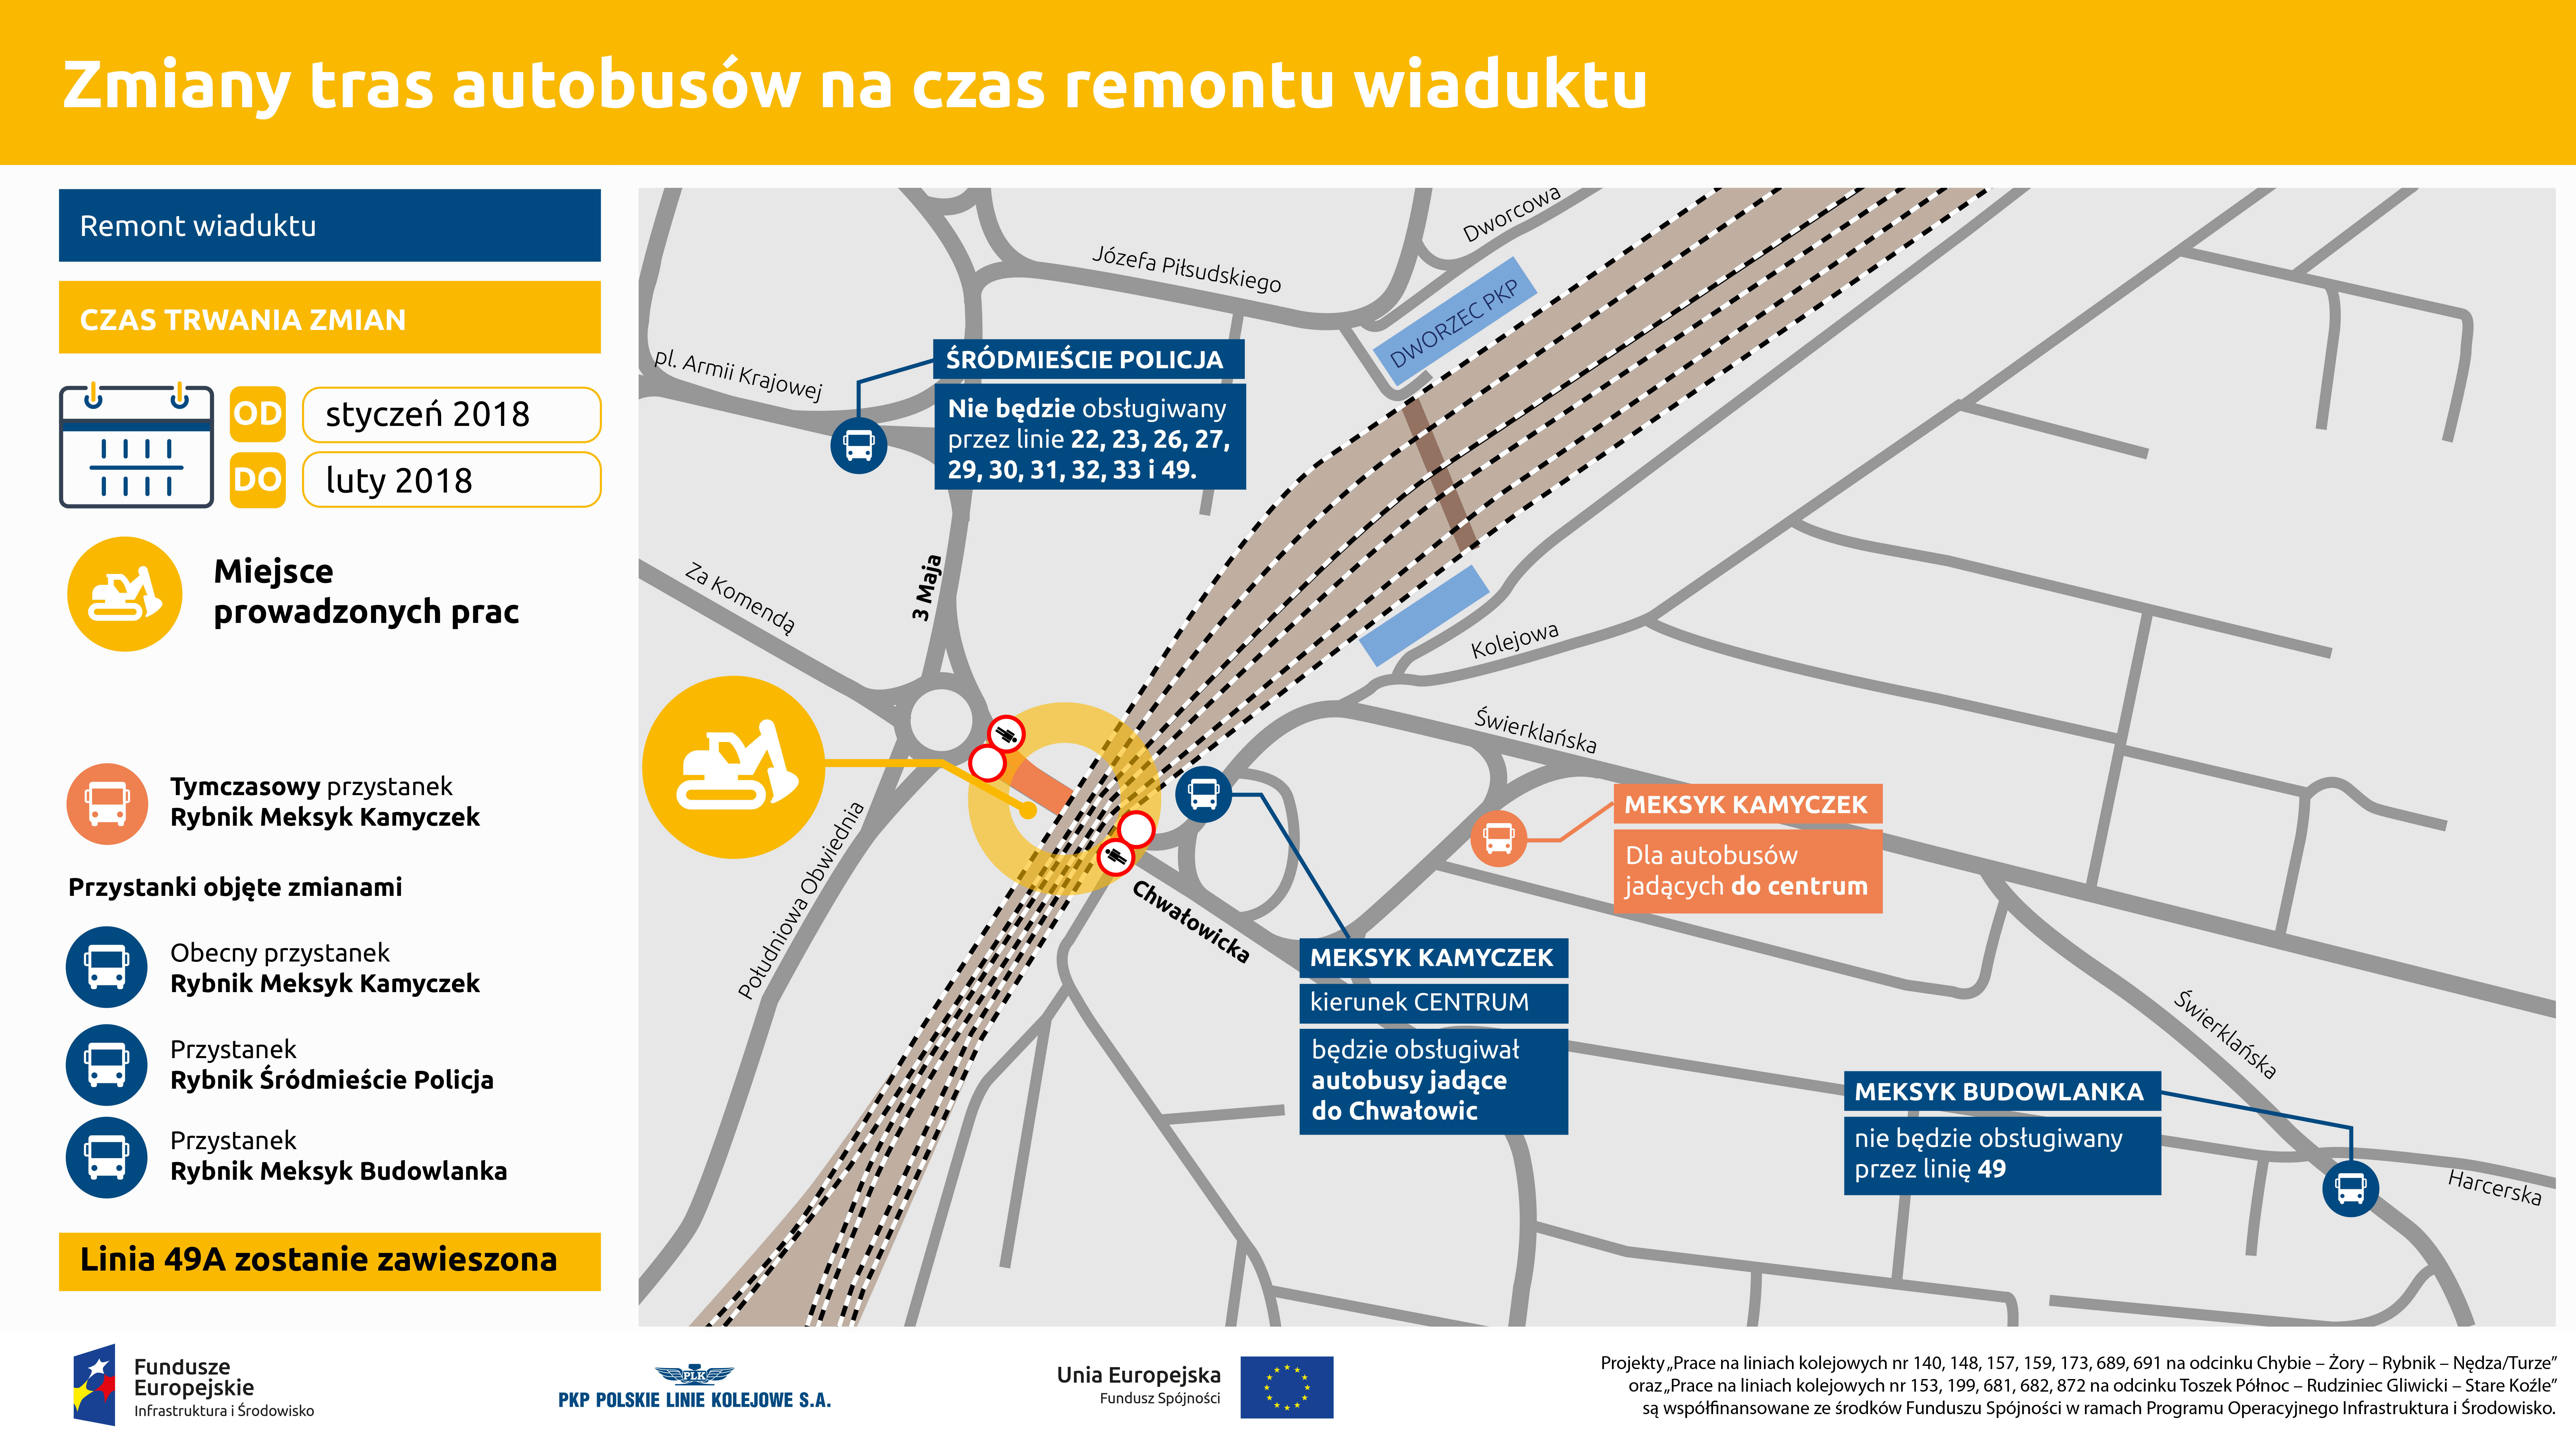 Infografika mówi o objazdach które będą obowiązywać w czasie trwania remontu wiaduktu nad ulicą Chwałowicką. Mapa dokładnie obrazuje wytyczone objazdy.